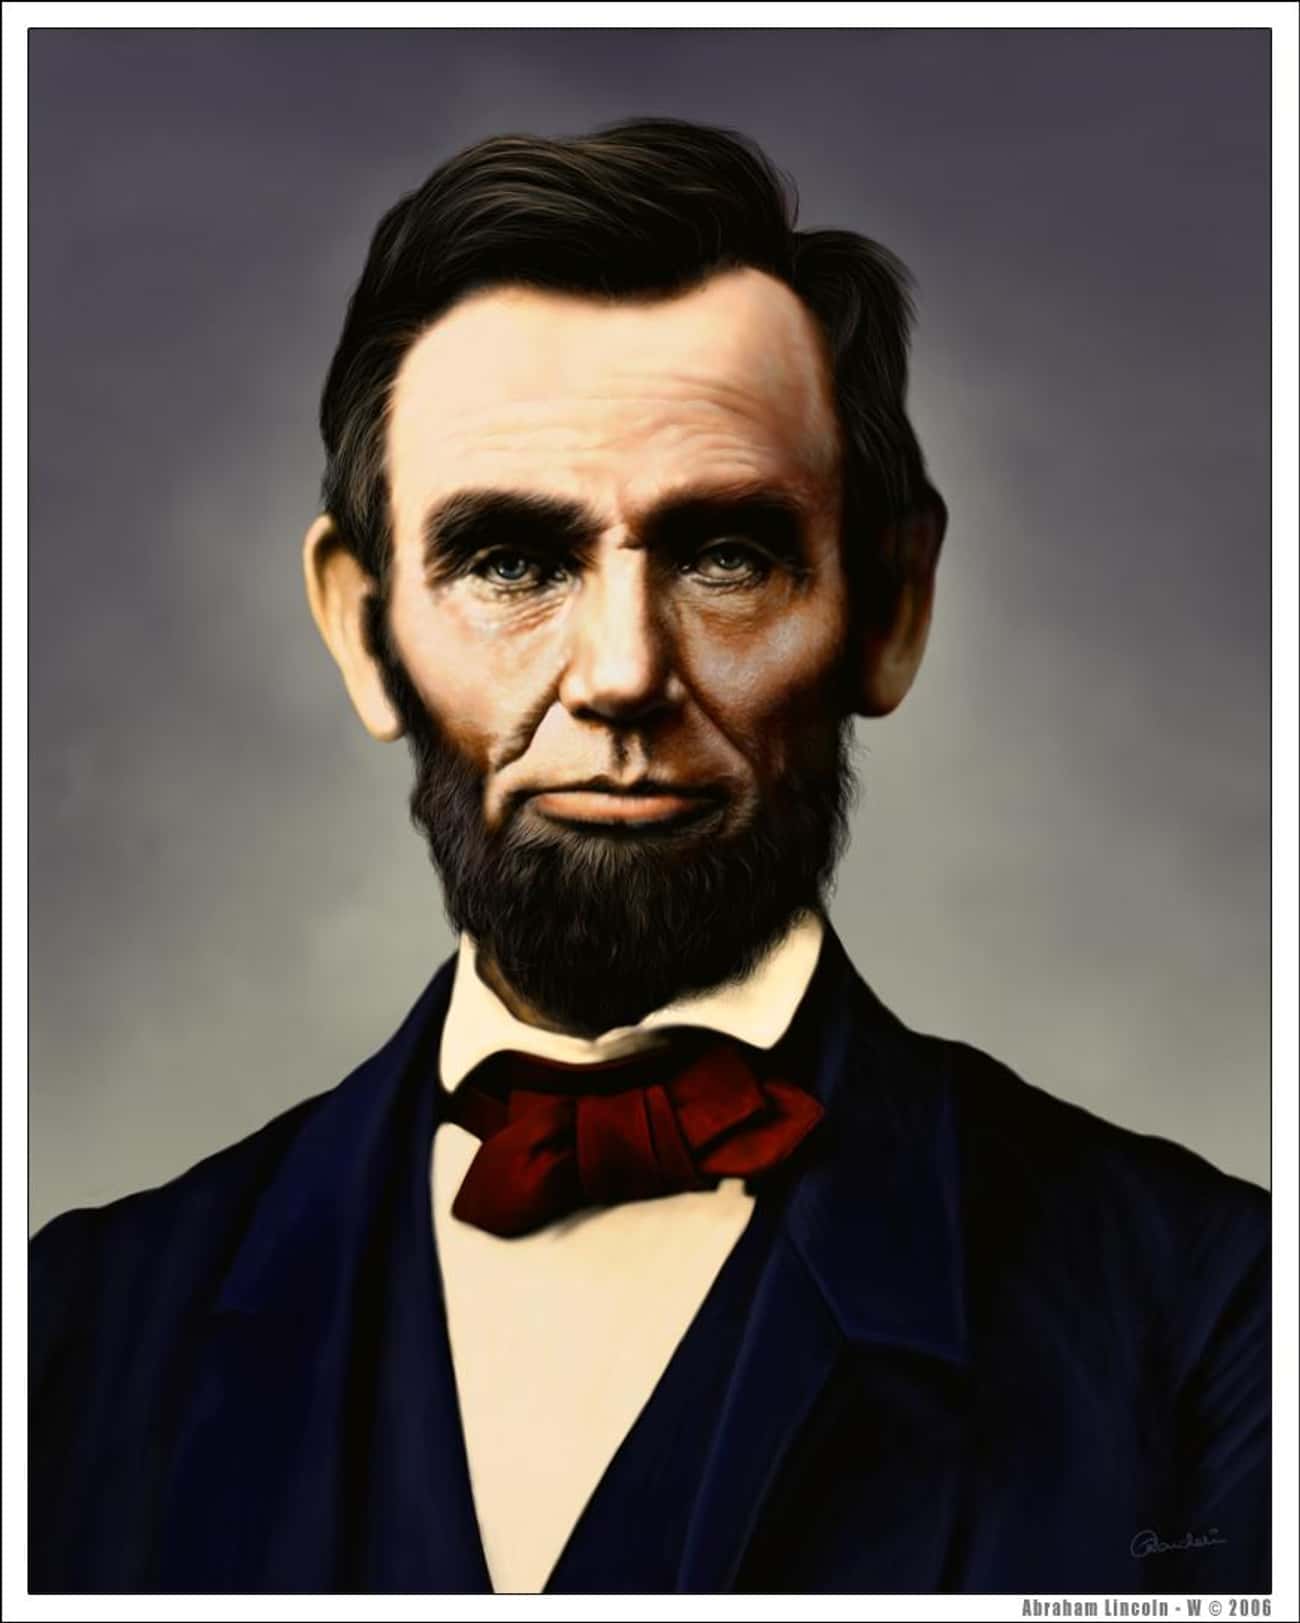 Abraham Lincoln Was An Aquarius